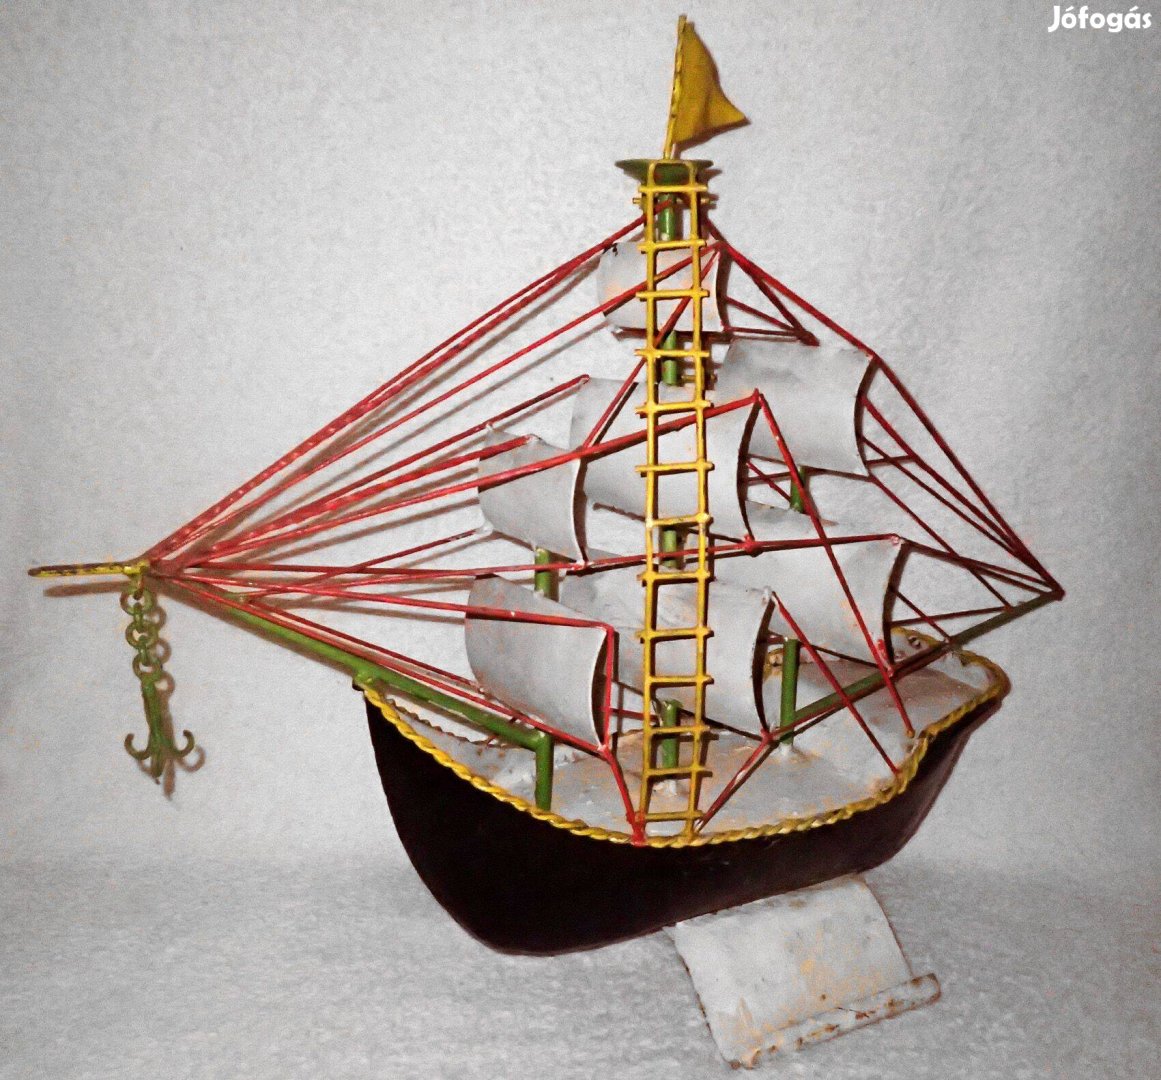 Ritka antik óriási nehéz egyedi kézzel készített vas fém vitorlás hajó